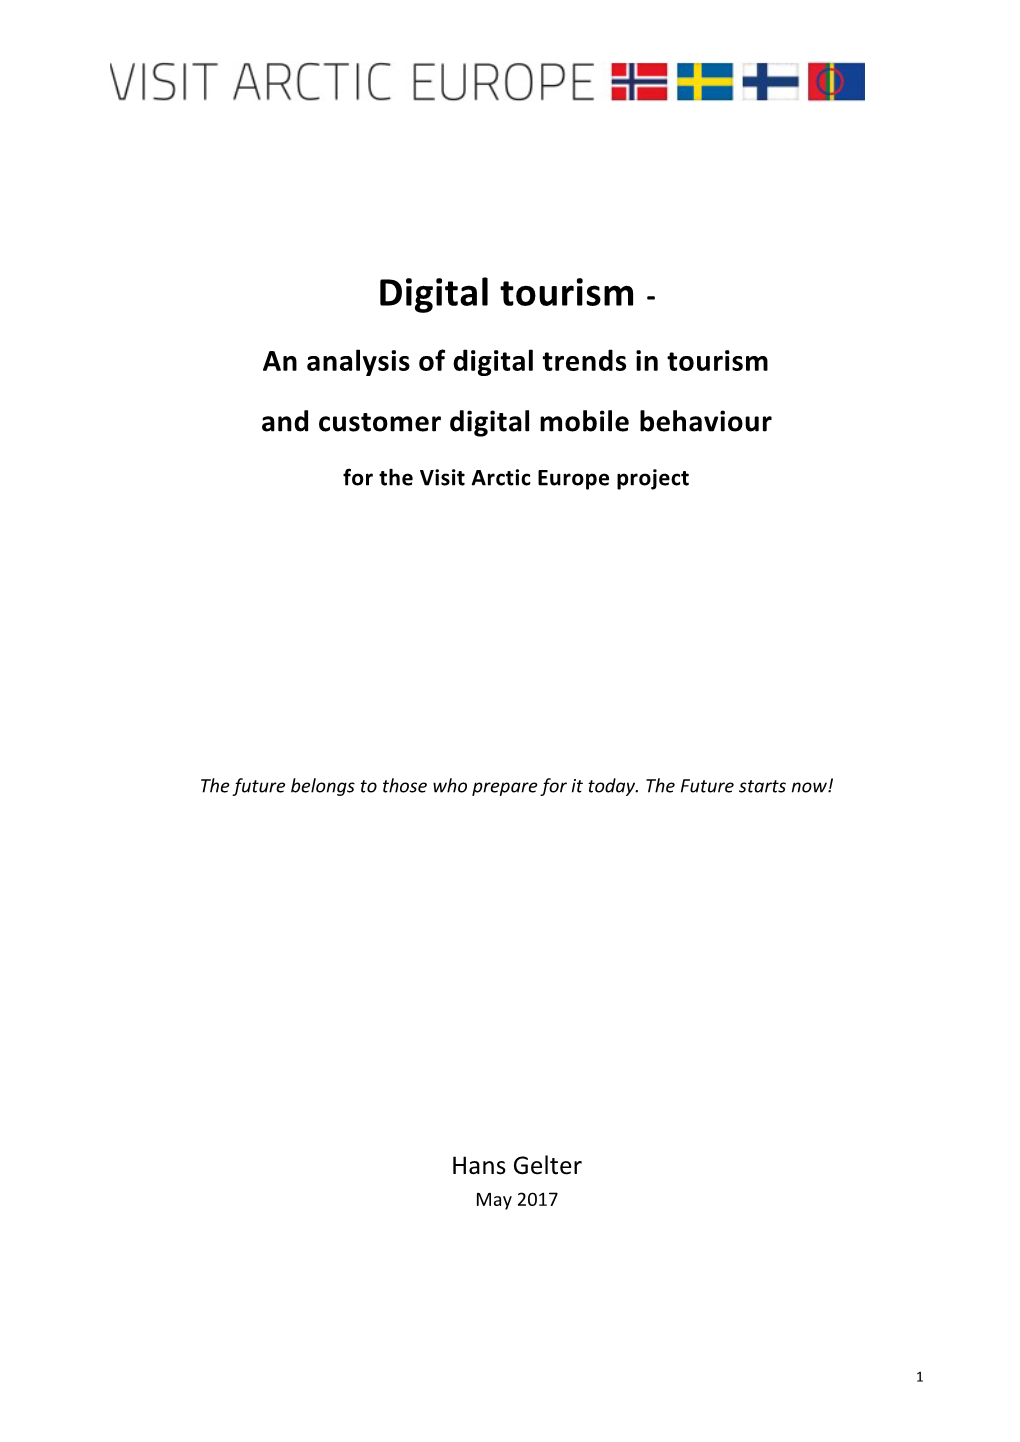 Digital Tourism